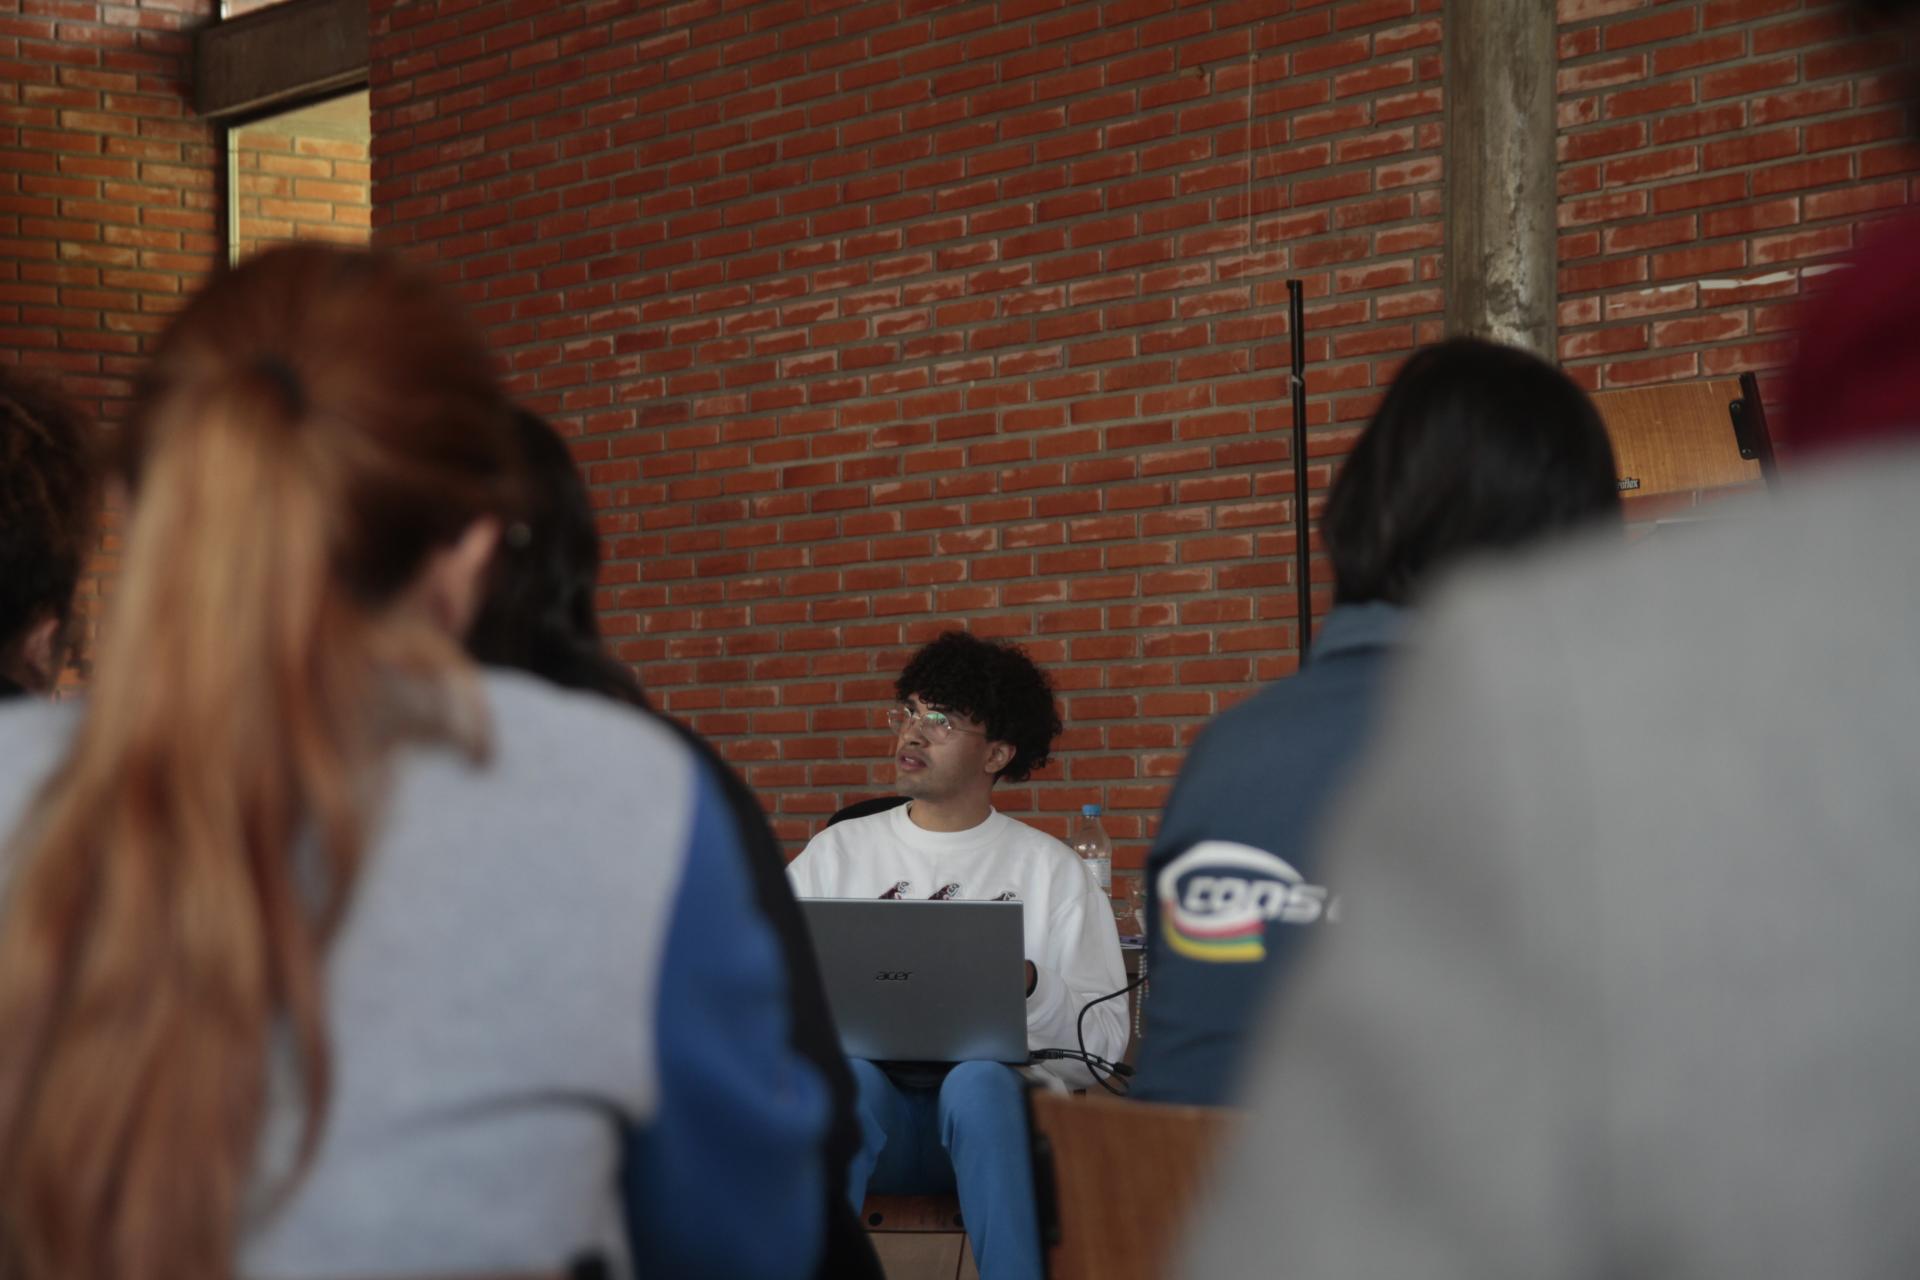 foto colorida horizontal com pessoas sentadas, de costas, voltadas para um rapaz sentado à frente, de moletom branco e com um notebook nas pernas